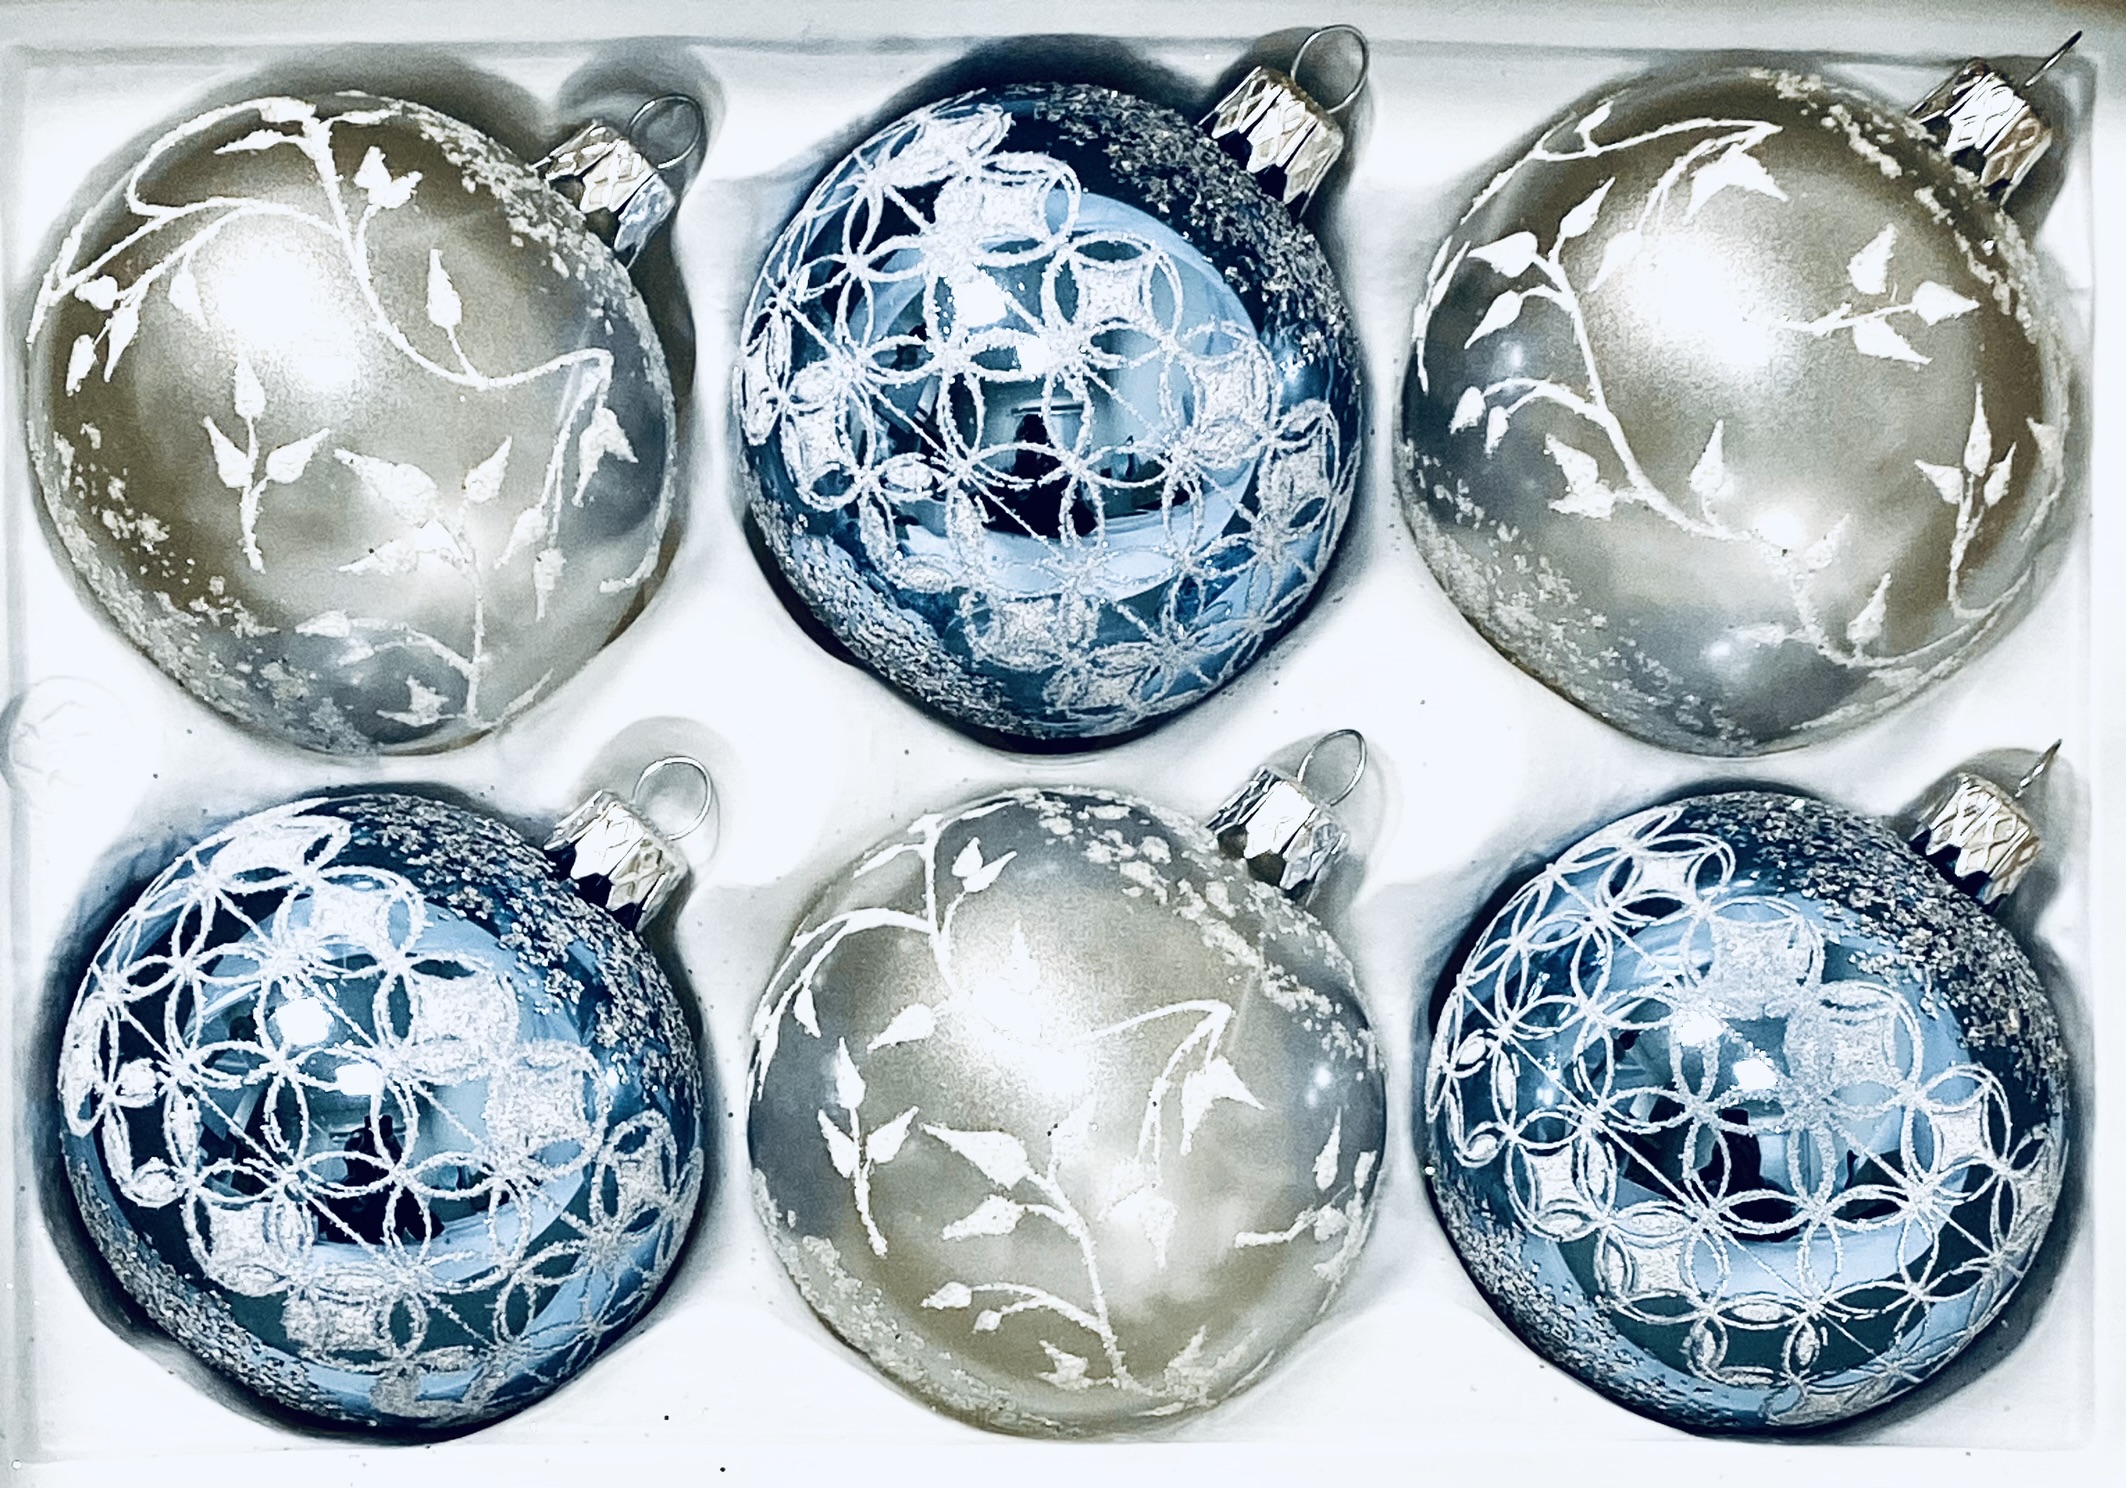 Amélie Collection: Sada 6 skleněných vánočních koulí - Modré a bílé koule s dekorem Zamrzlé květy, velikost 7 cm, bílá a modrá Balení: 6 ks, Barva:…